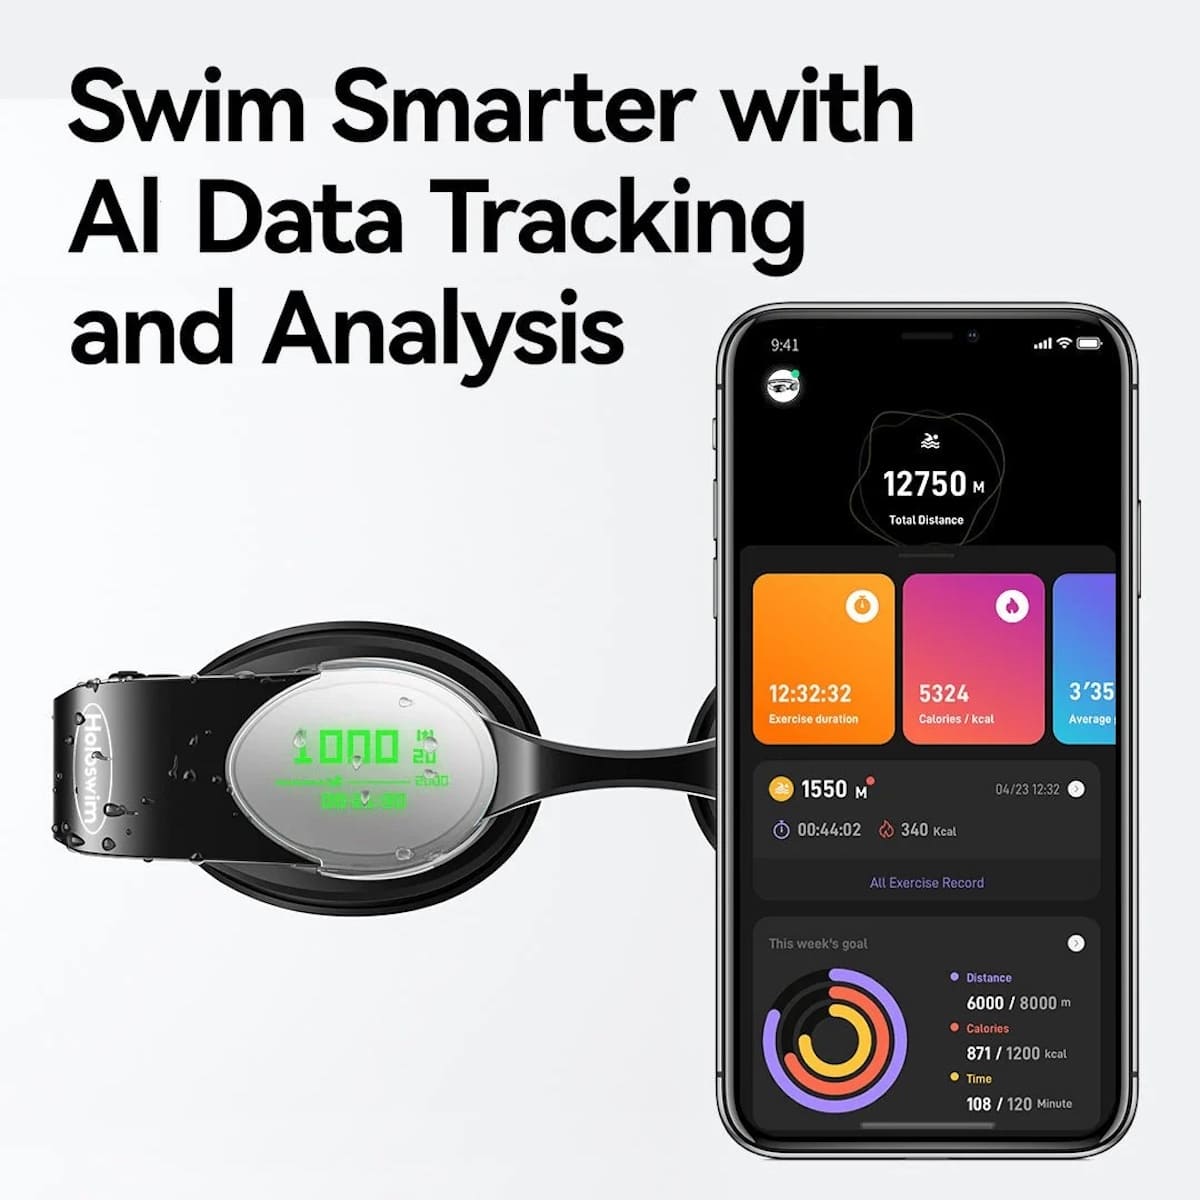 Lunettes de natation intelligentes holo swim avec application pour smartphone